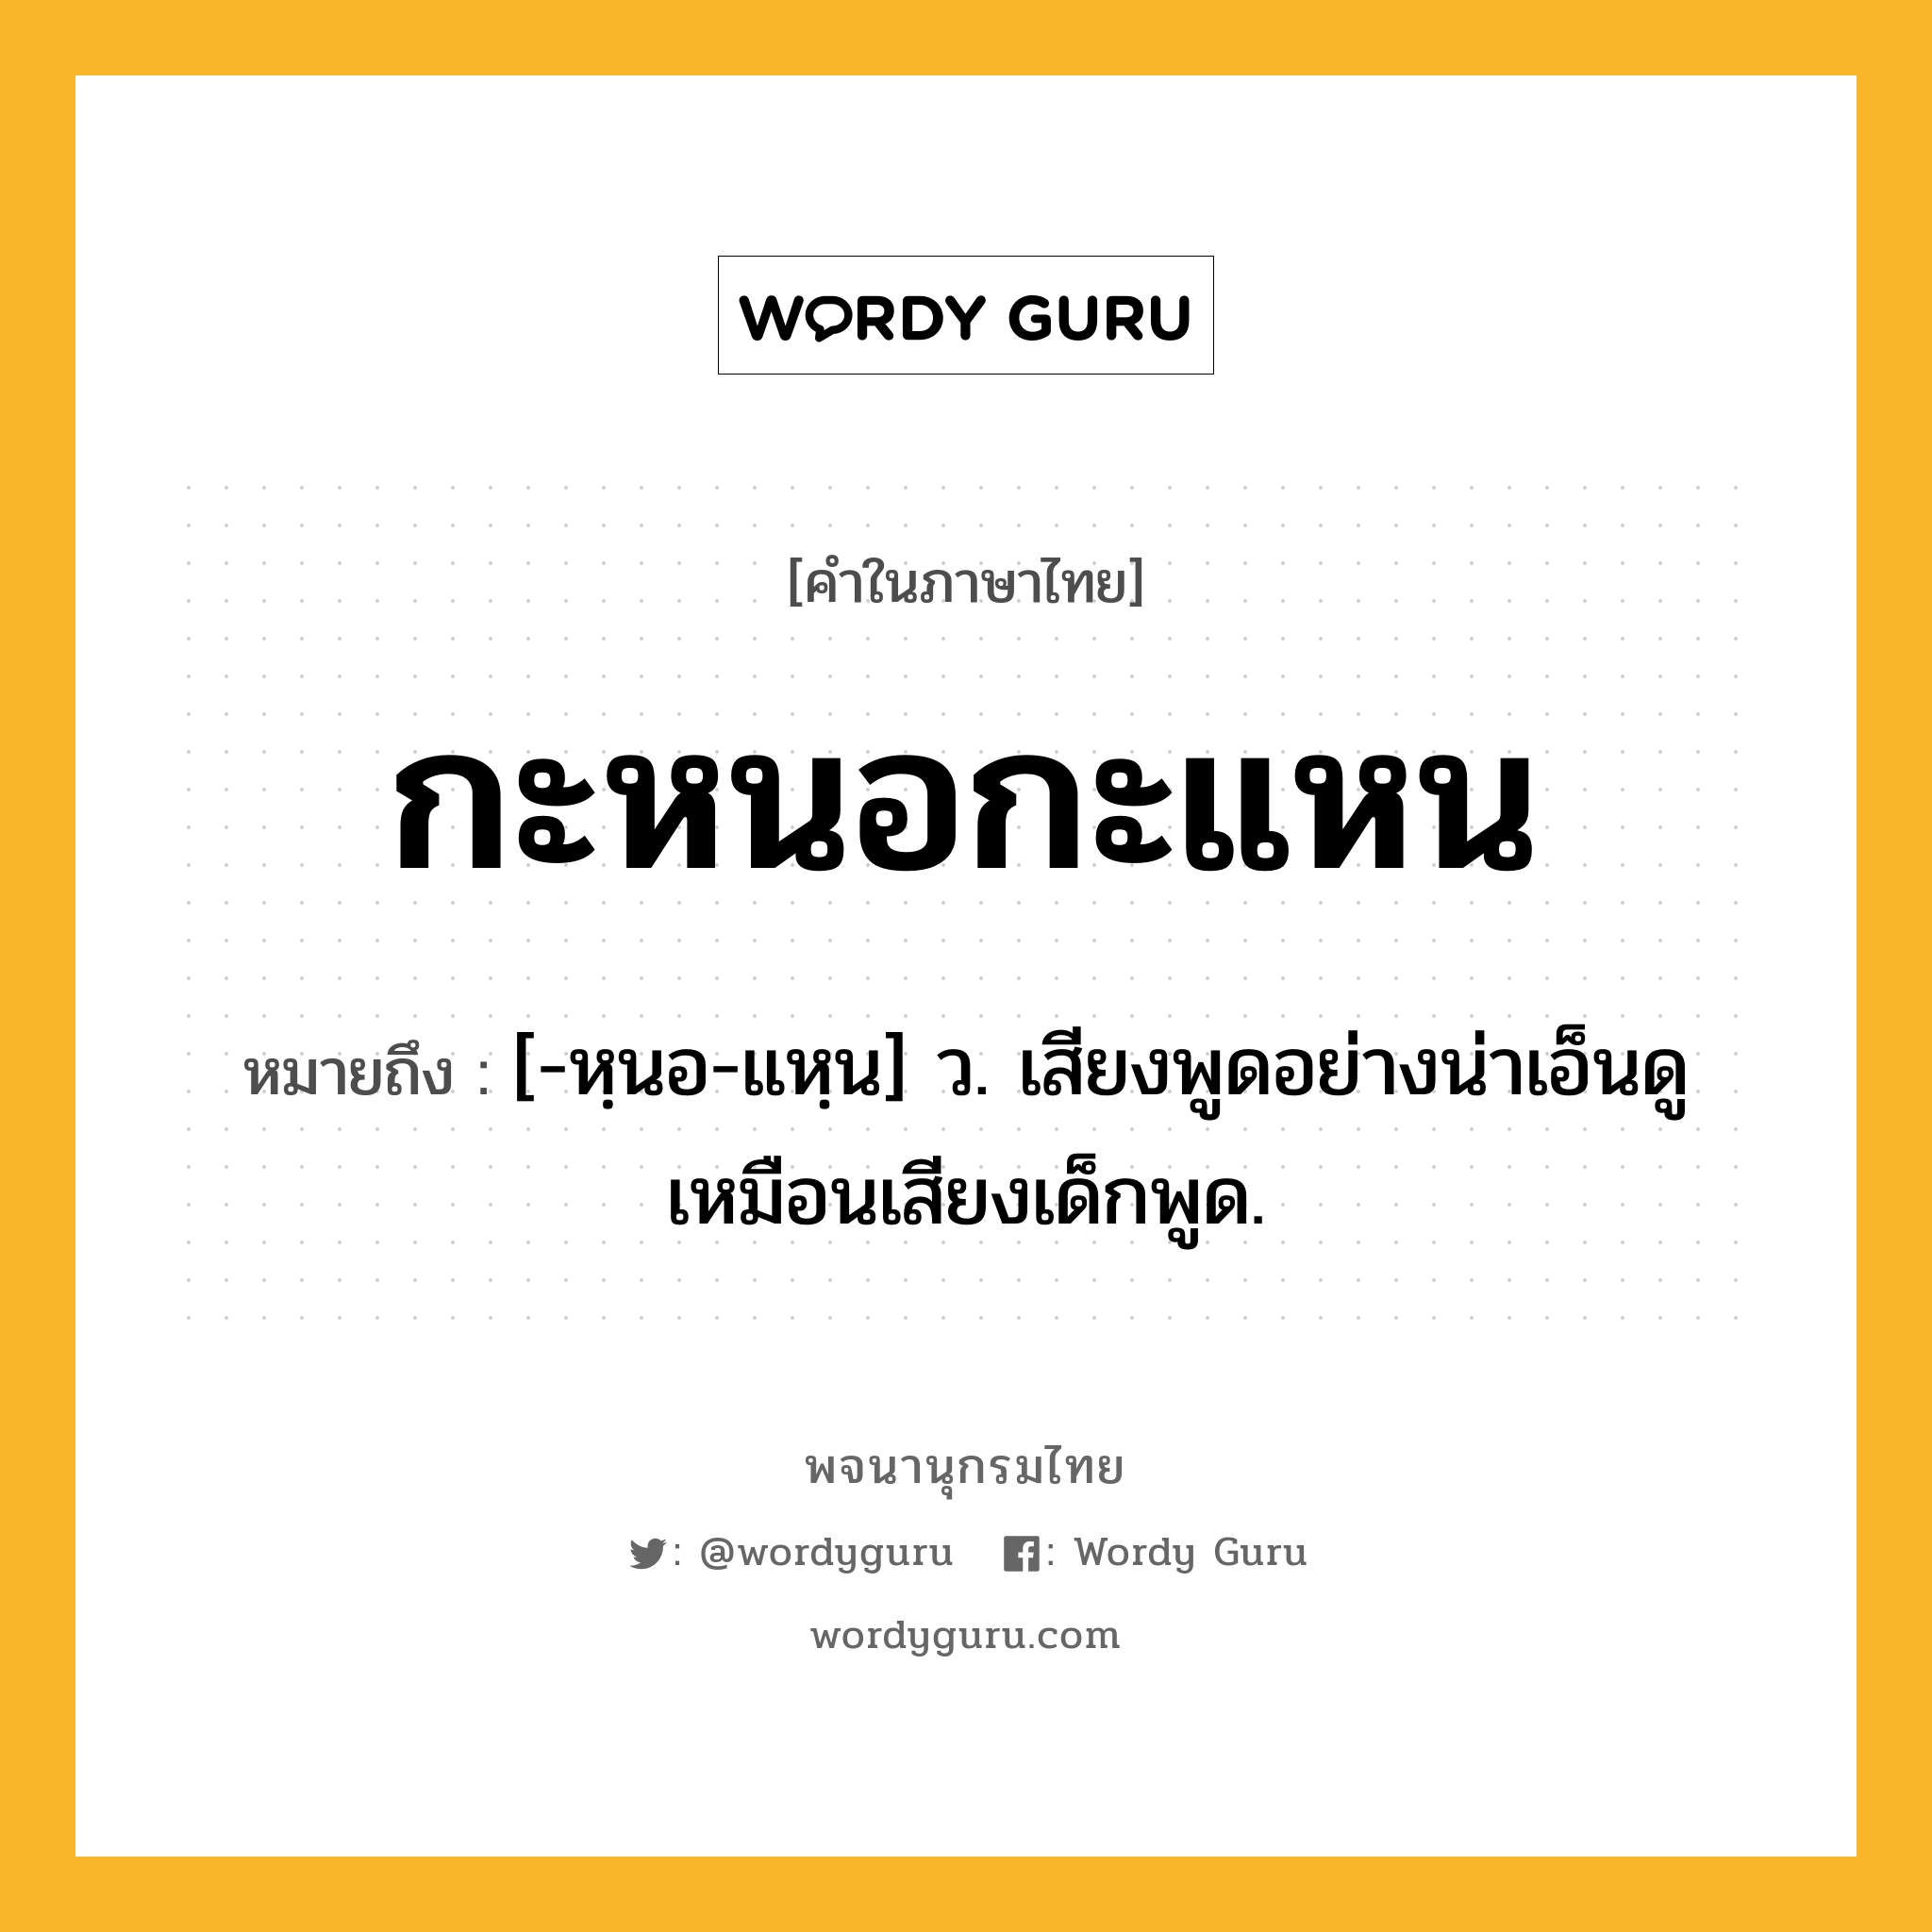 กะหนอกะแหน ความหมาย หมายถึงอะไร?, คำในภาษาไทย กะหนอกะแหน หมายถึง [-หฺนอ-แหฺน] ว. เสียงพูดอย่างน่าเอ็นดูเหมือนเสียงเด็กพูด.